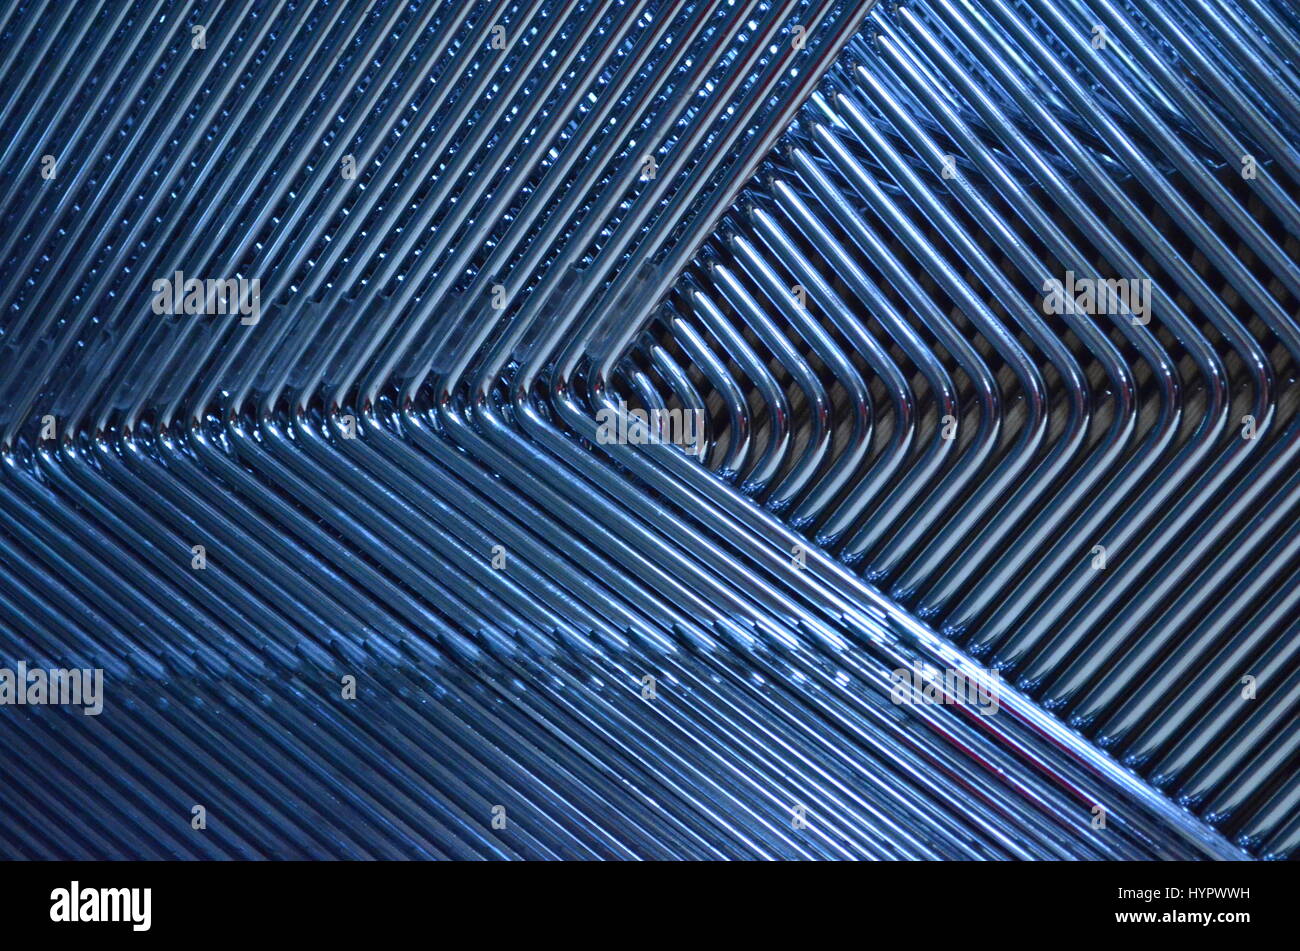 Abstarct pattern di barre in acciaio Foto Stock